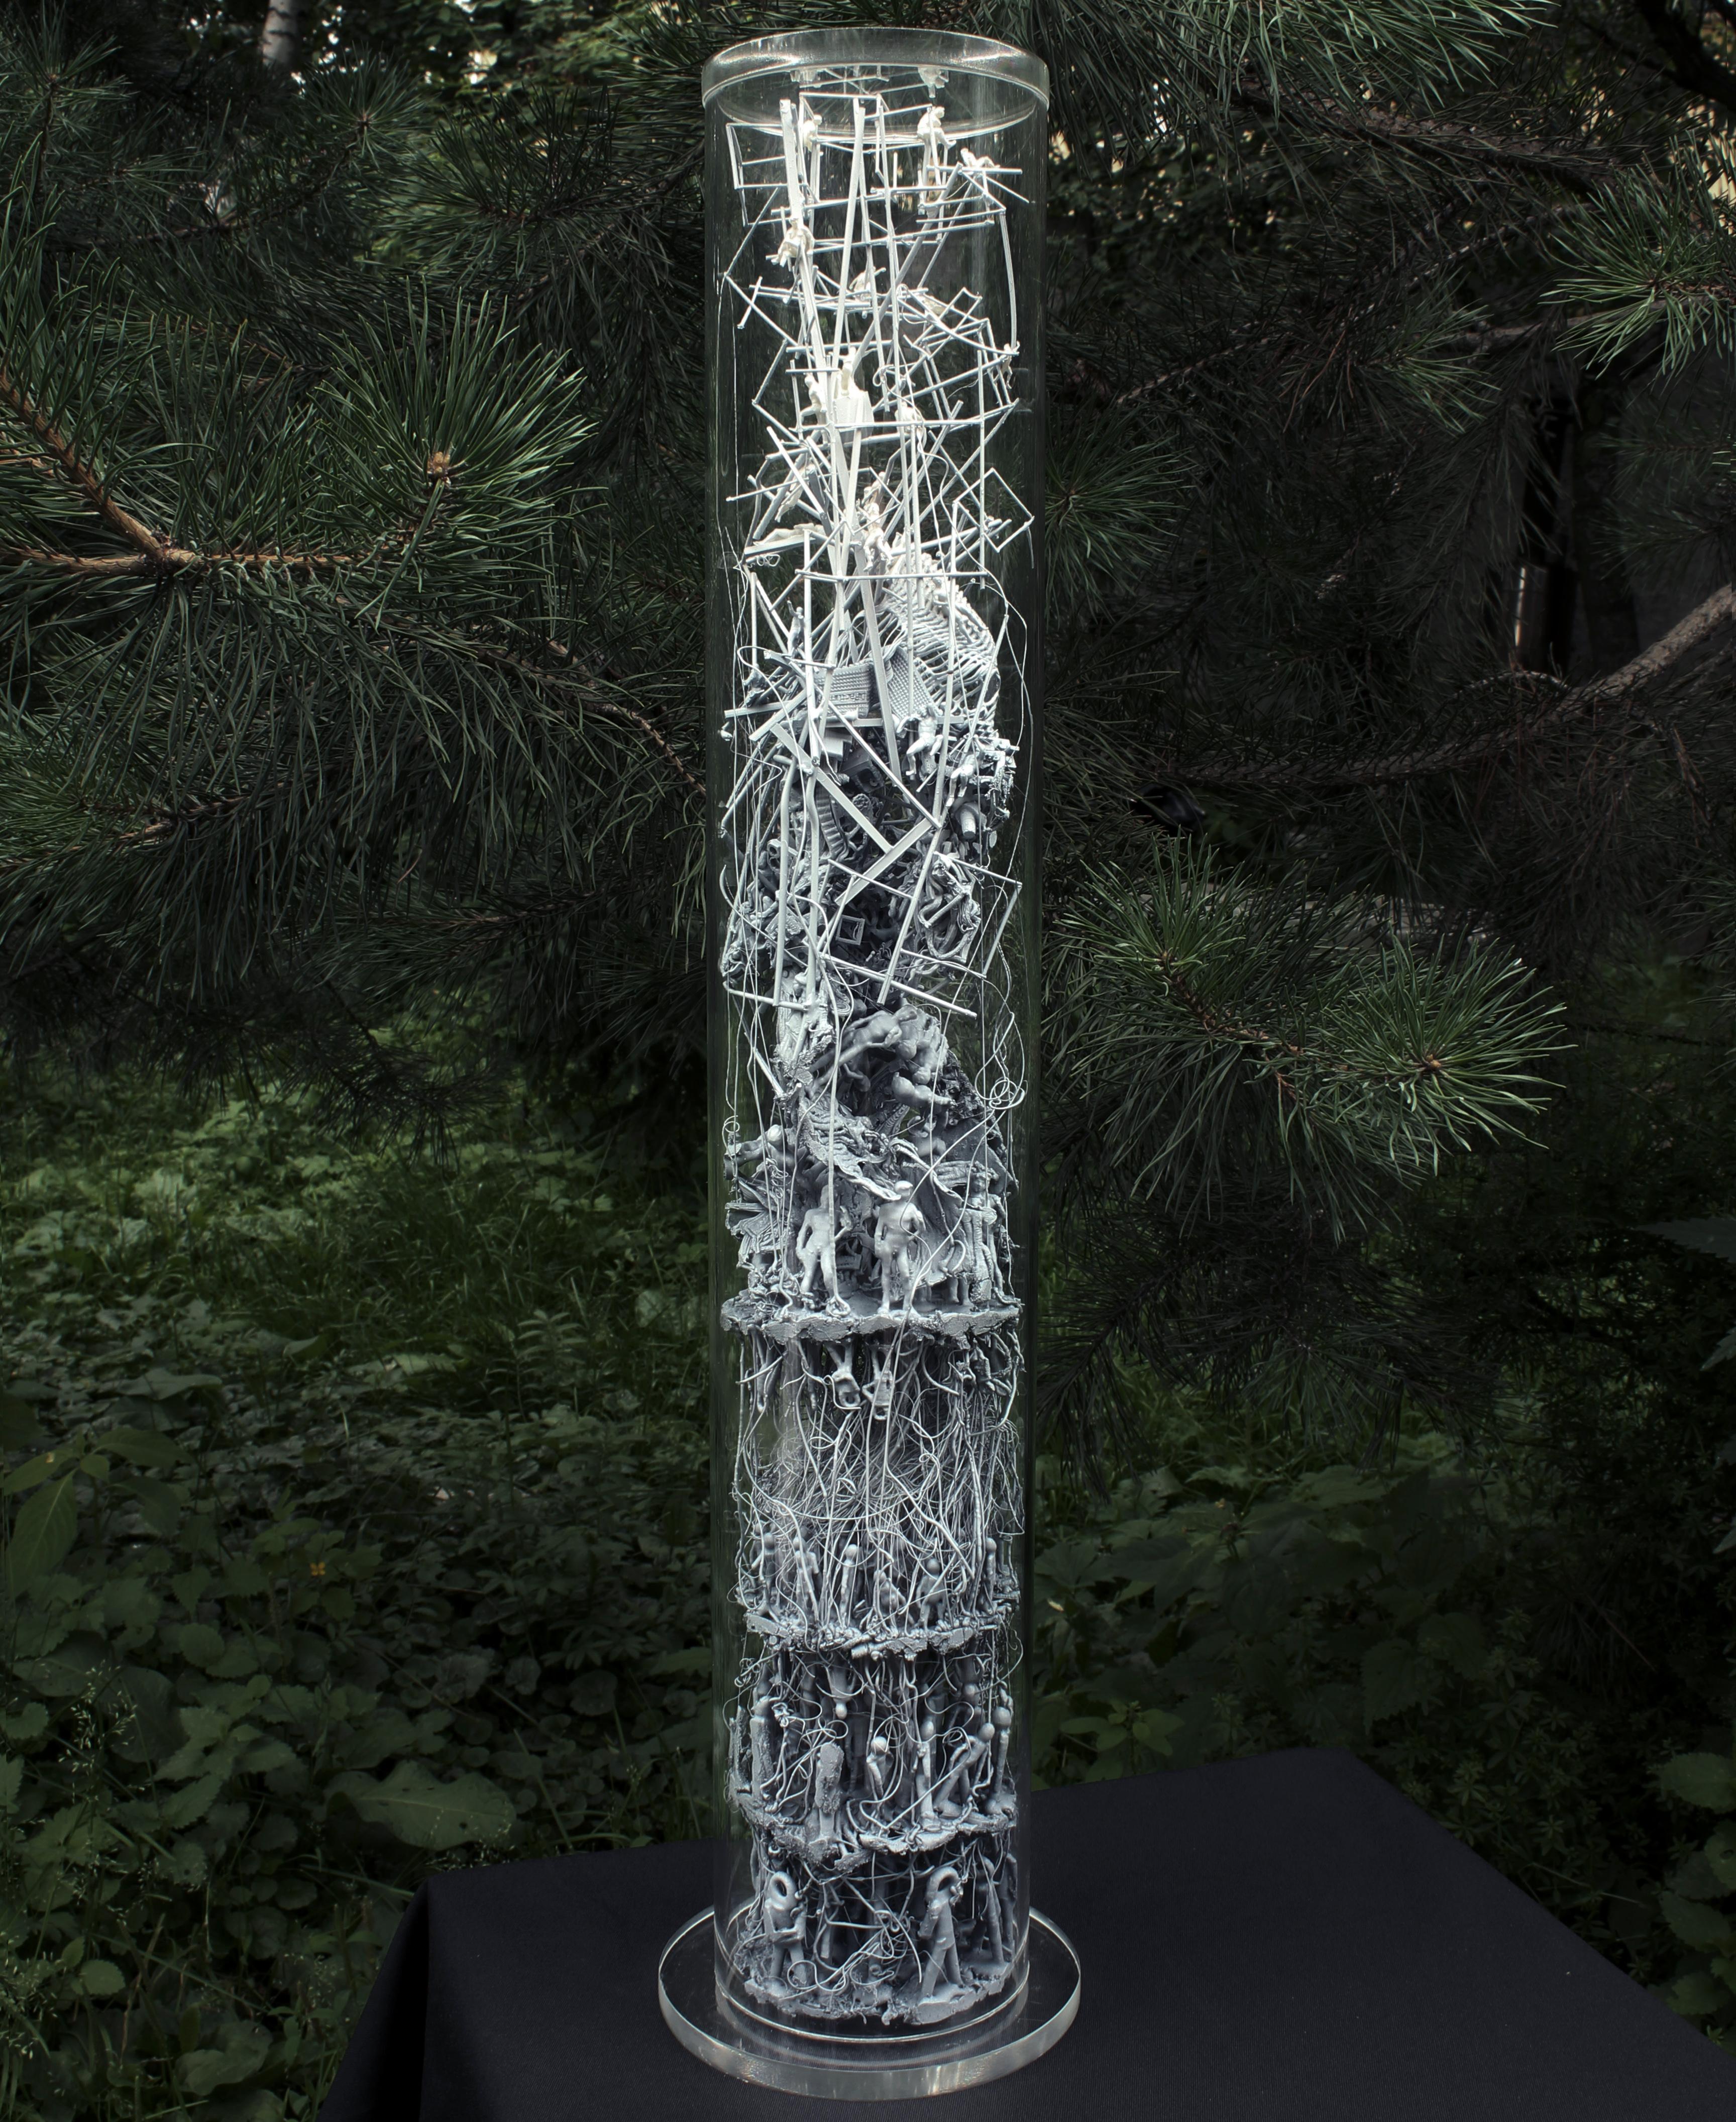 Abstract Sculpture Dmitry Kawarga  - Sculpture "Evolutionary Substance" de 20" x 4" pouces par Dmitry Kawarga